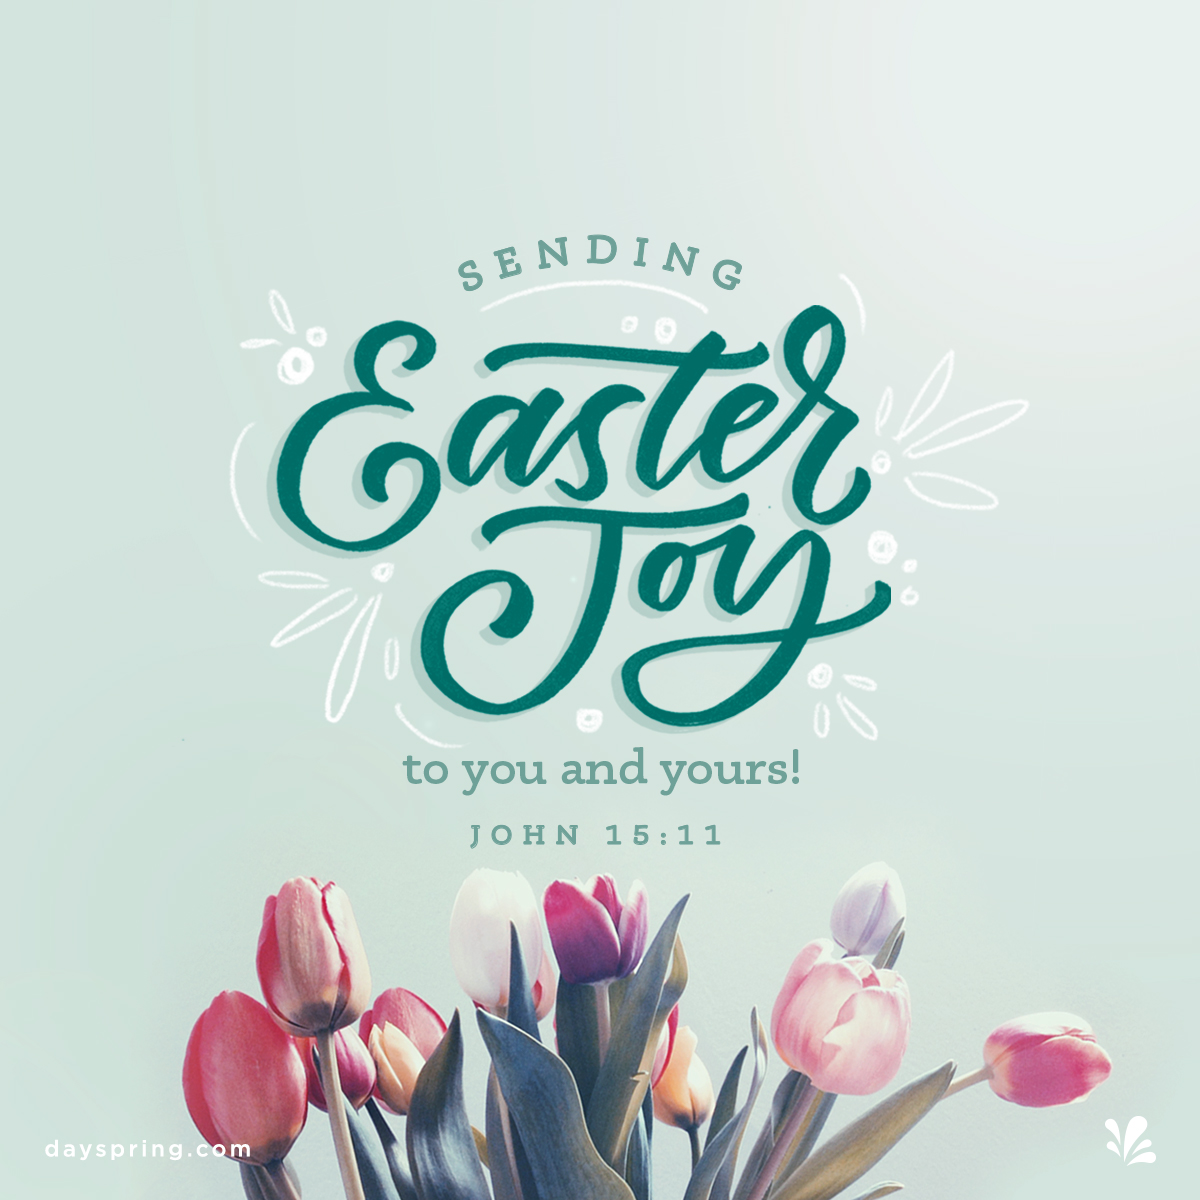 Sending Easter Joy